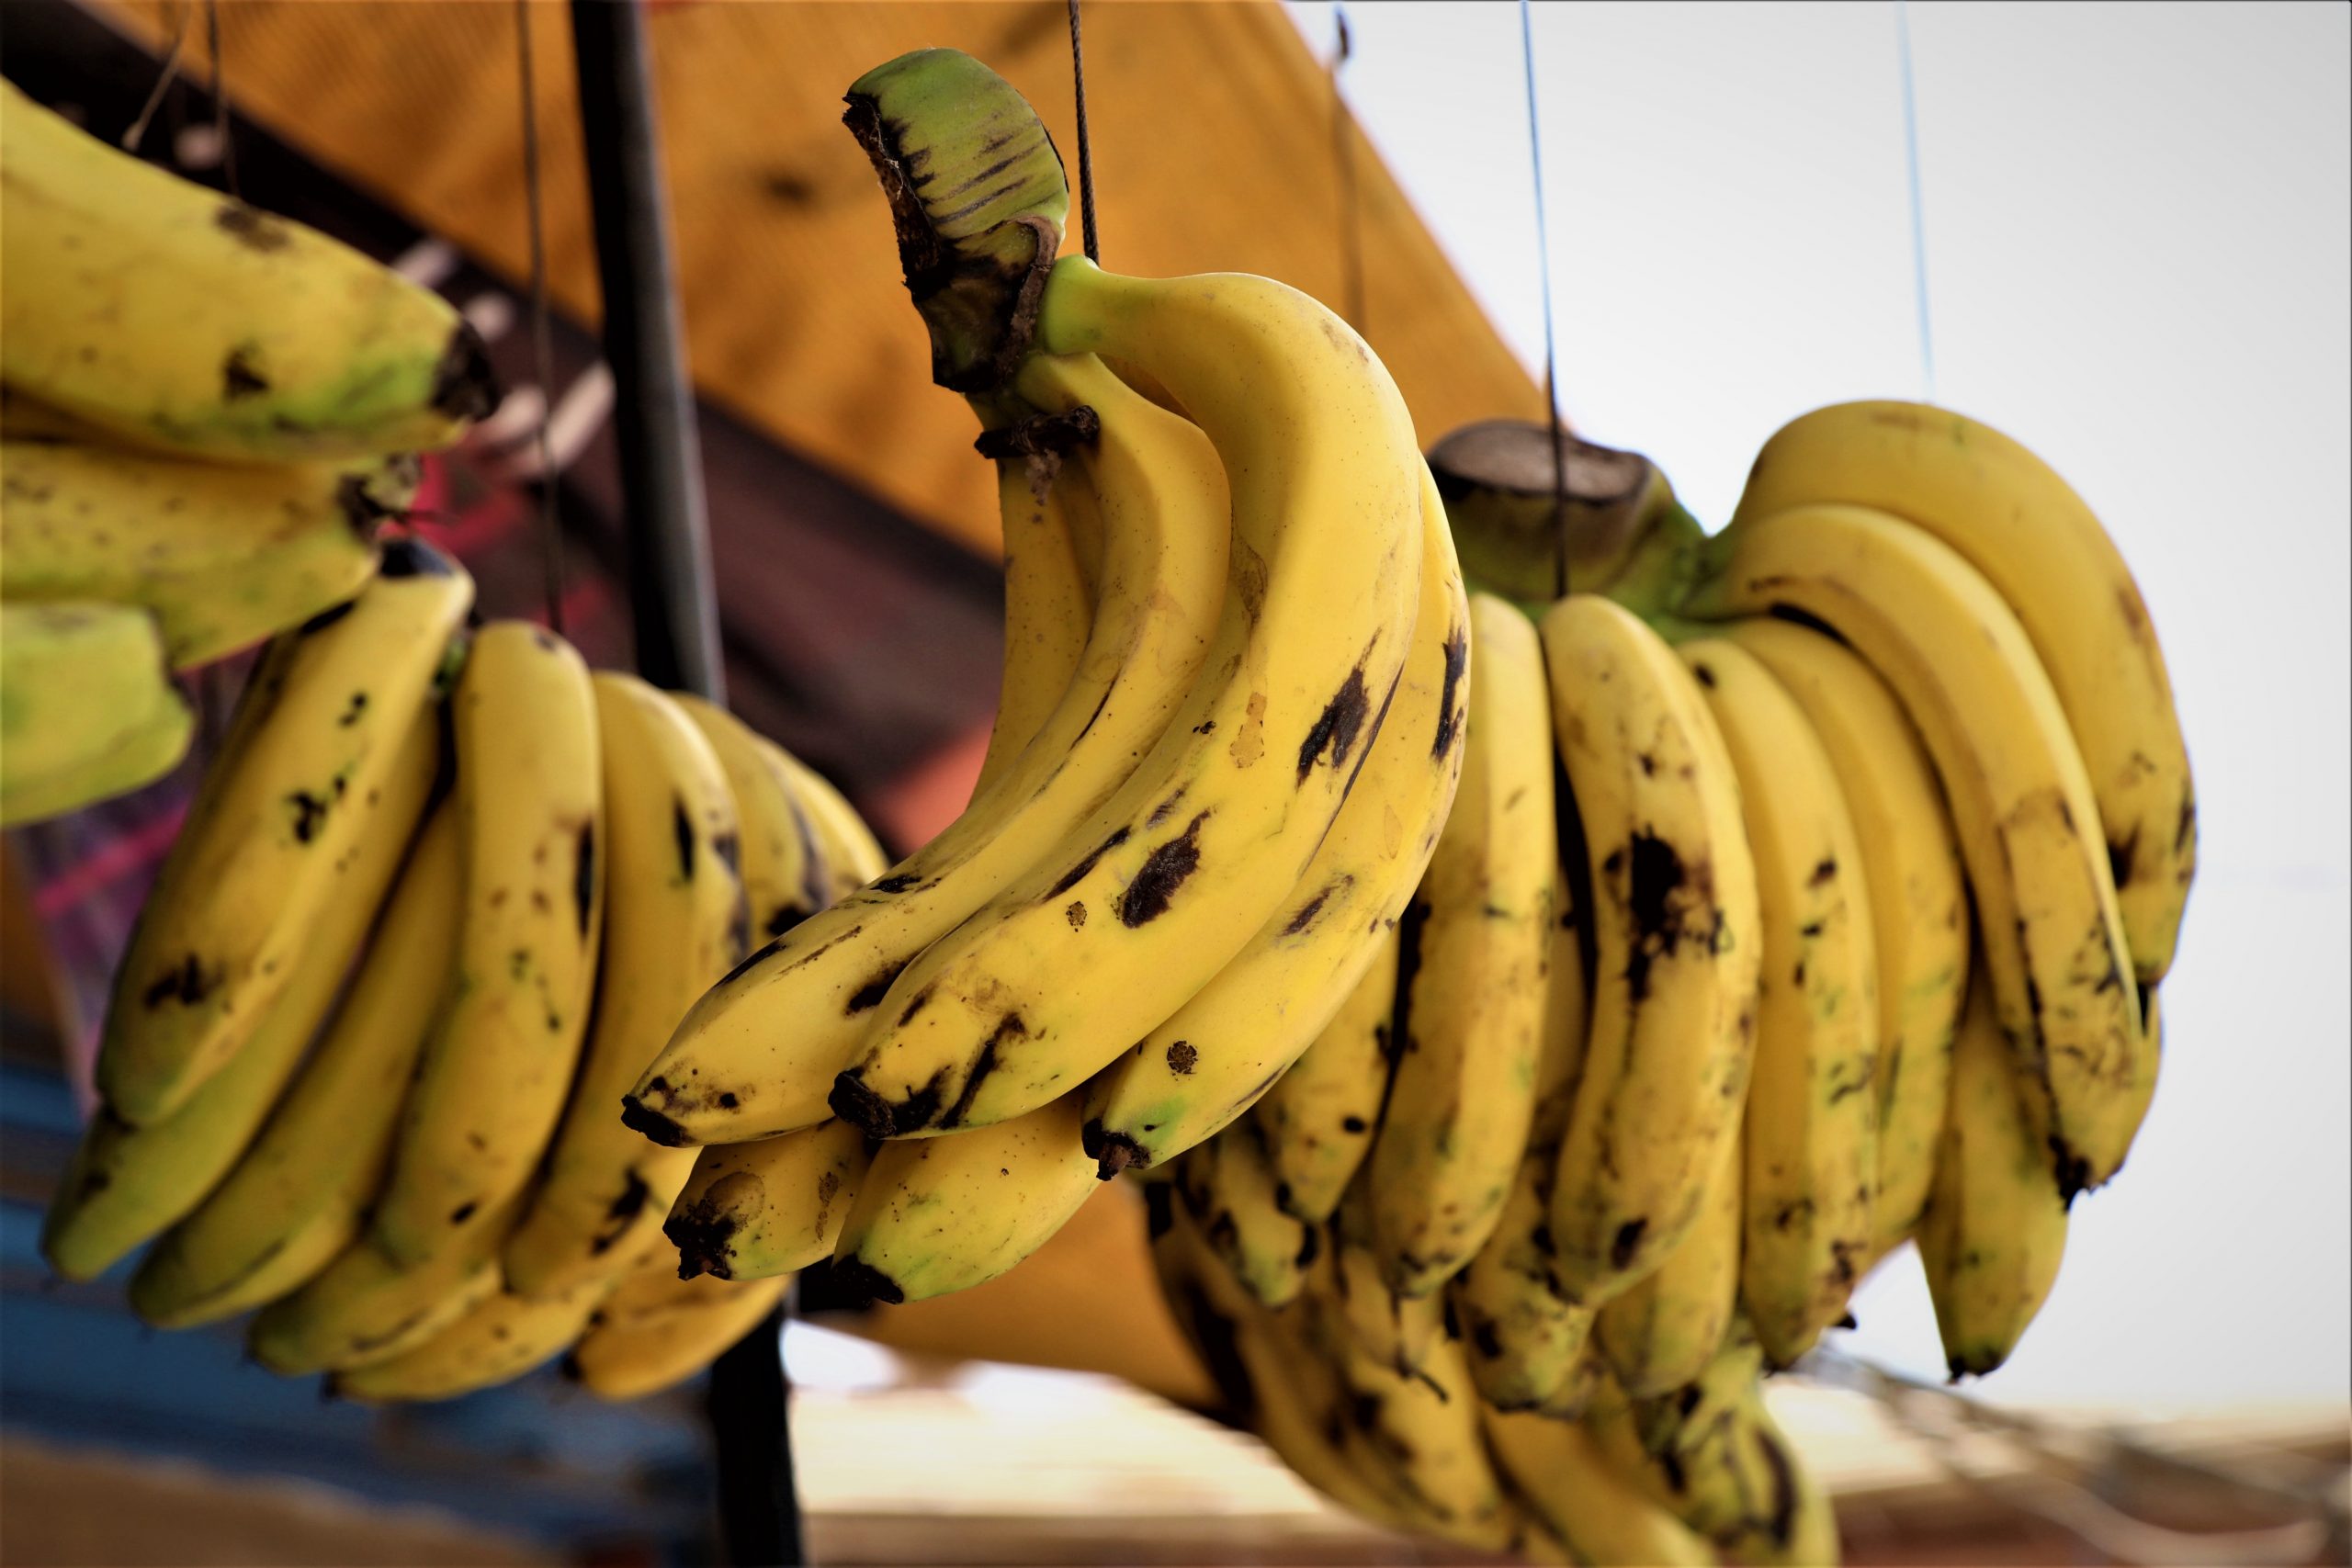 How Long Do Bananas Last in the Fridge...